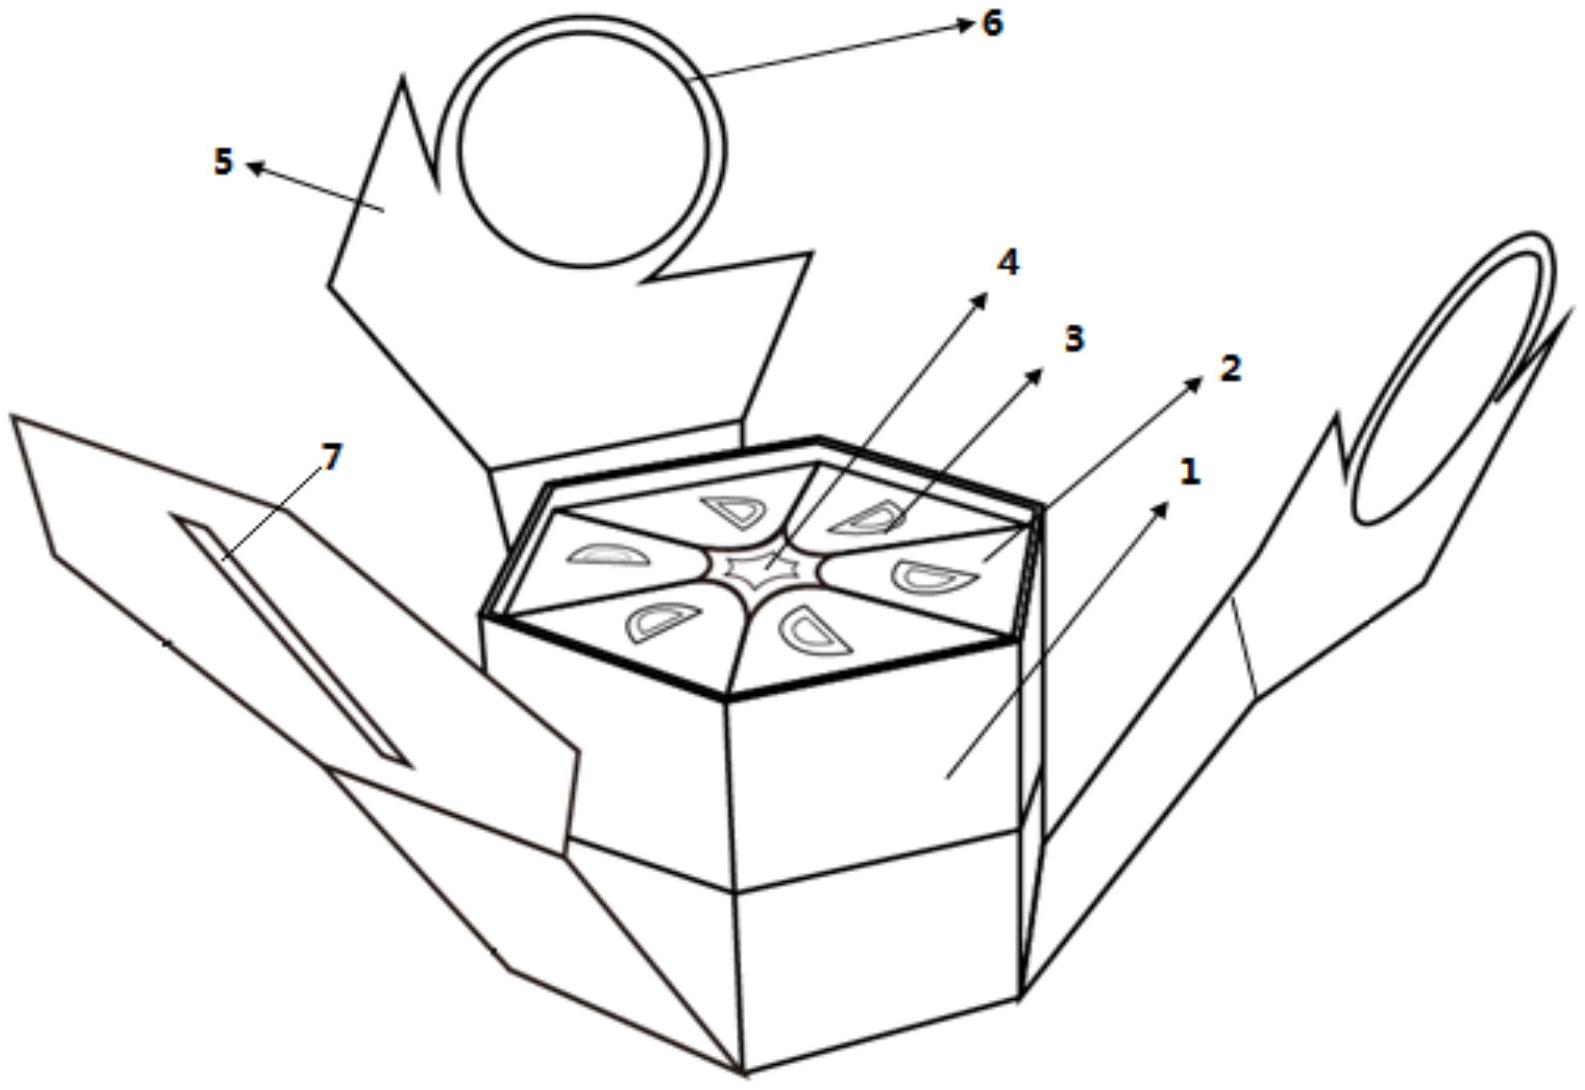 单层盒体的内部放置有六个上底面带有半圆形提手的三棱柱状包装盒单体